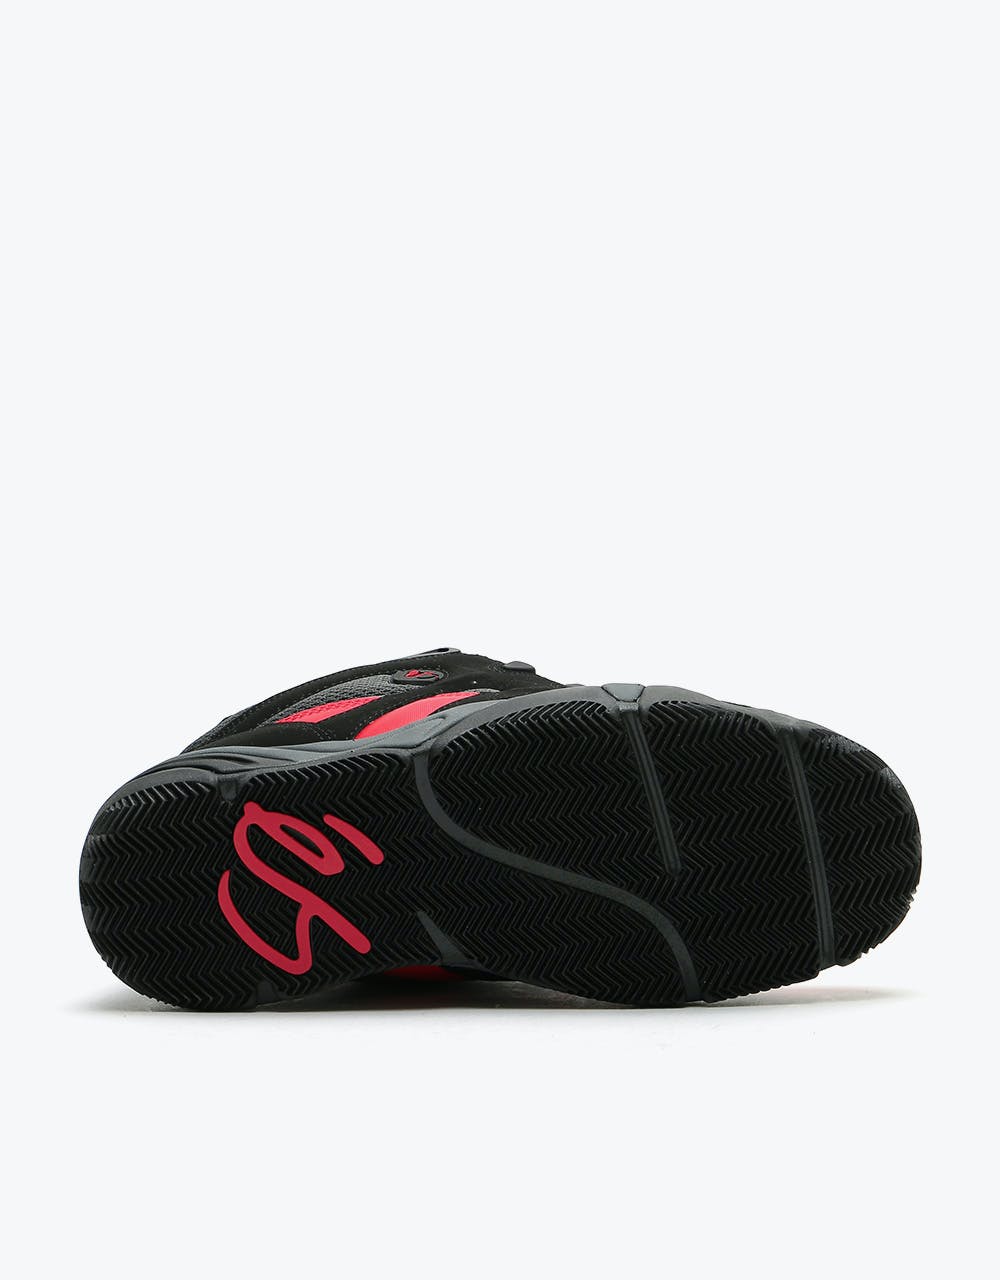 éS Scheme Skate Shoes - Black/Red